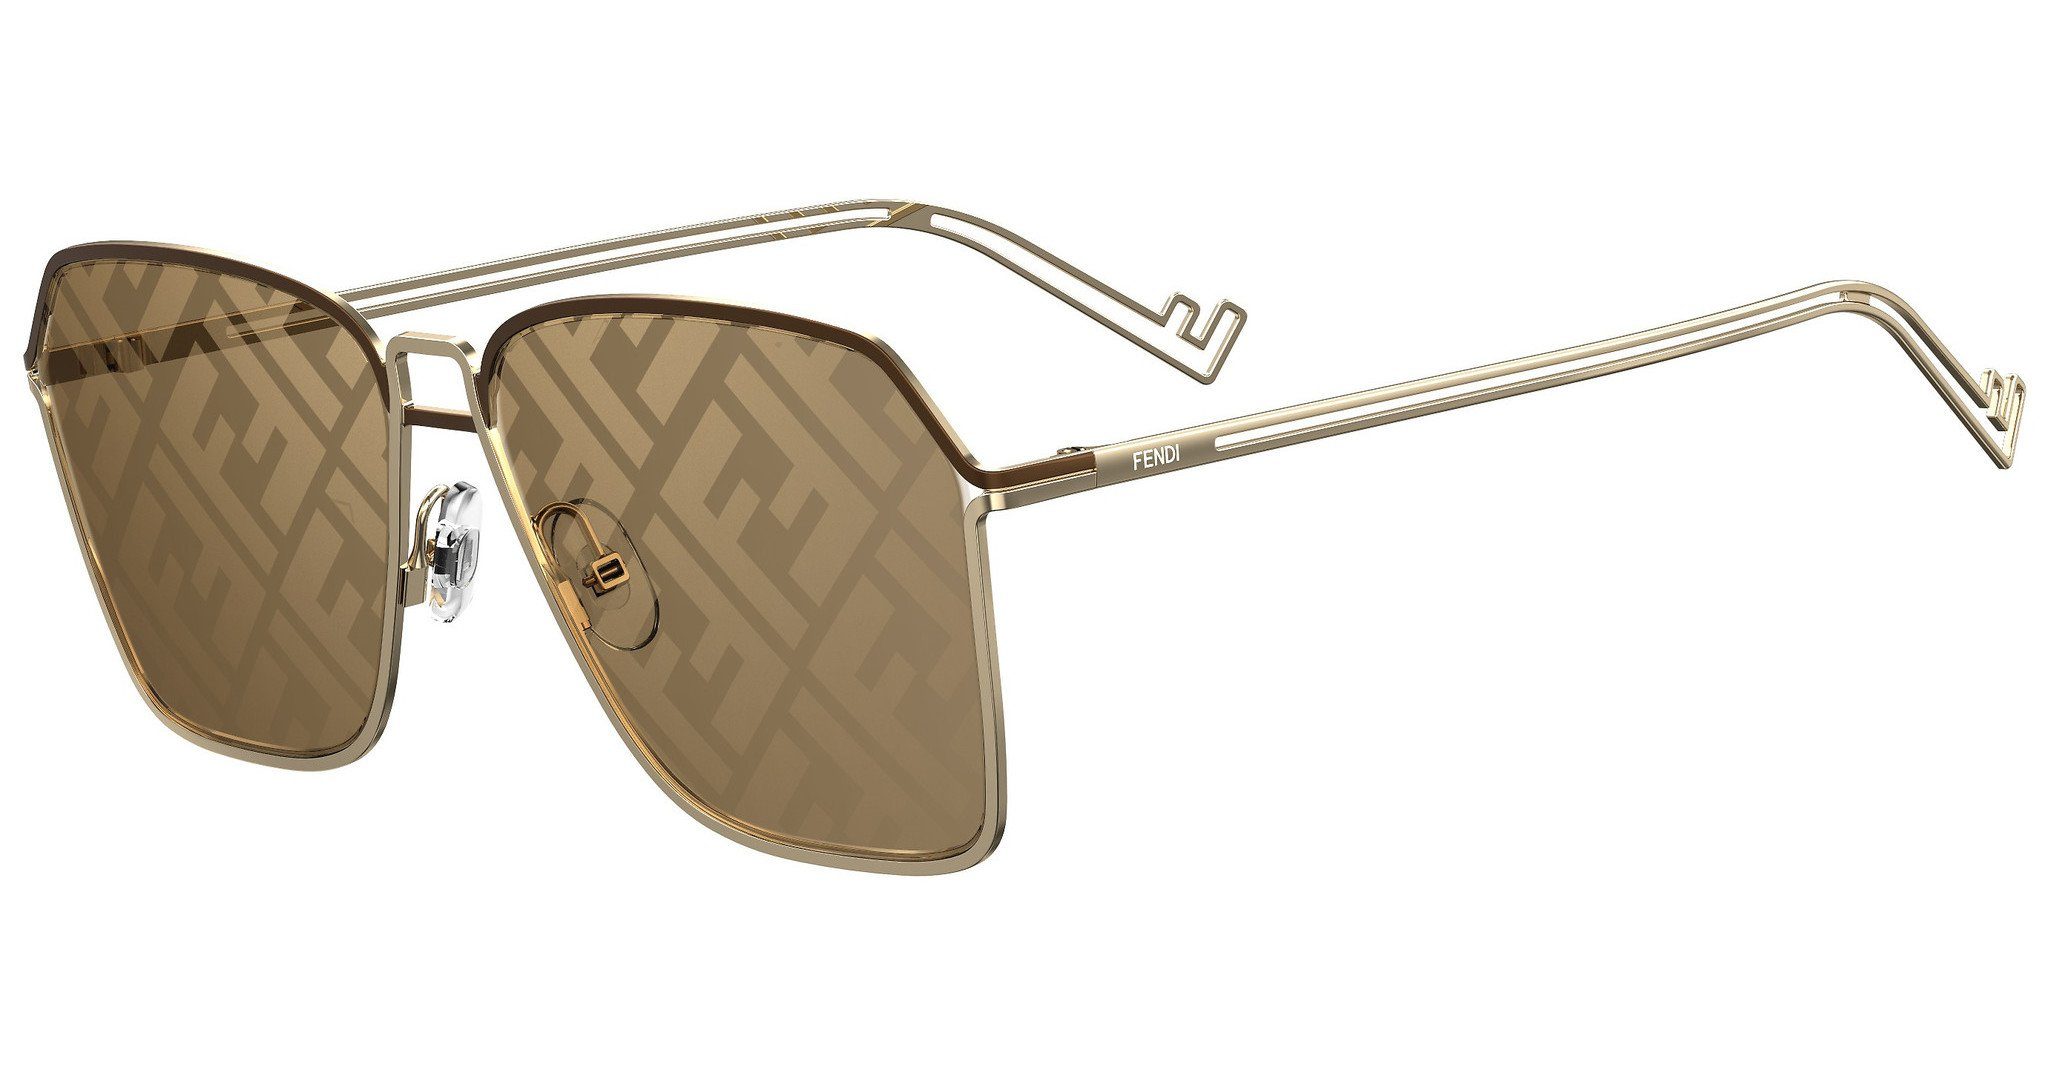 FENDI Sonnenbrille »FF M0072/S« online kaufen | OTTO